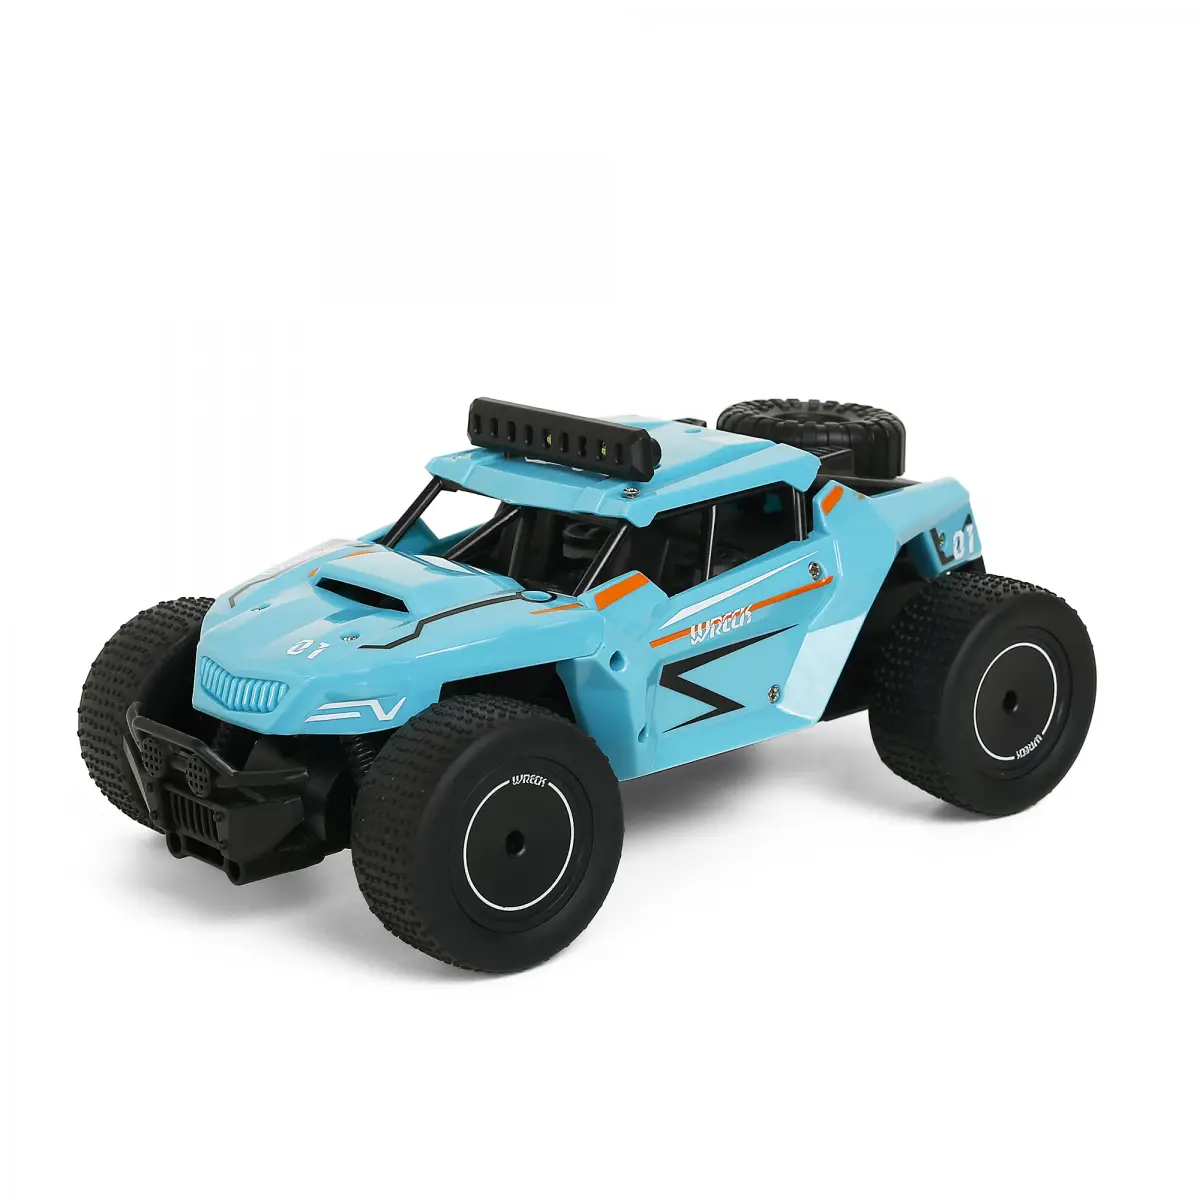 Ralleyz Quad Off-Roader Speed Stunt Car, 6Y+, Blue